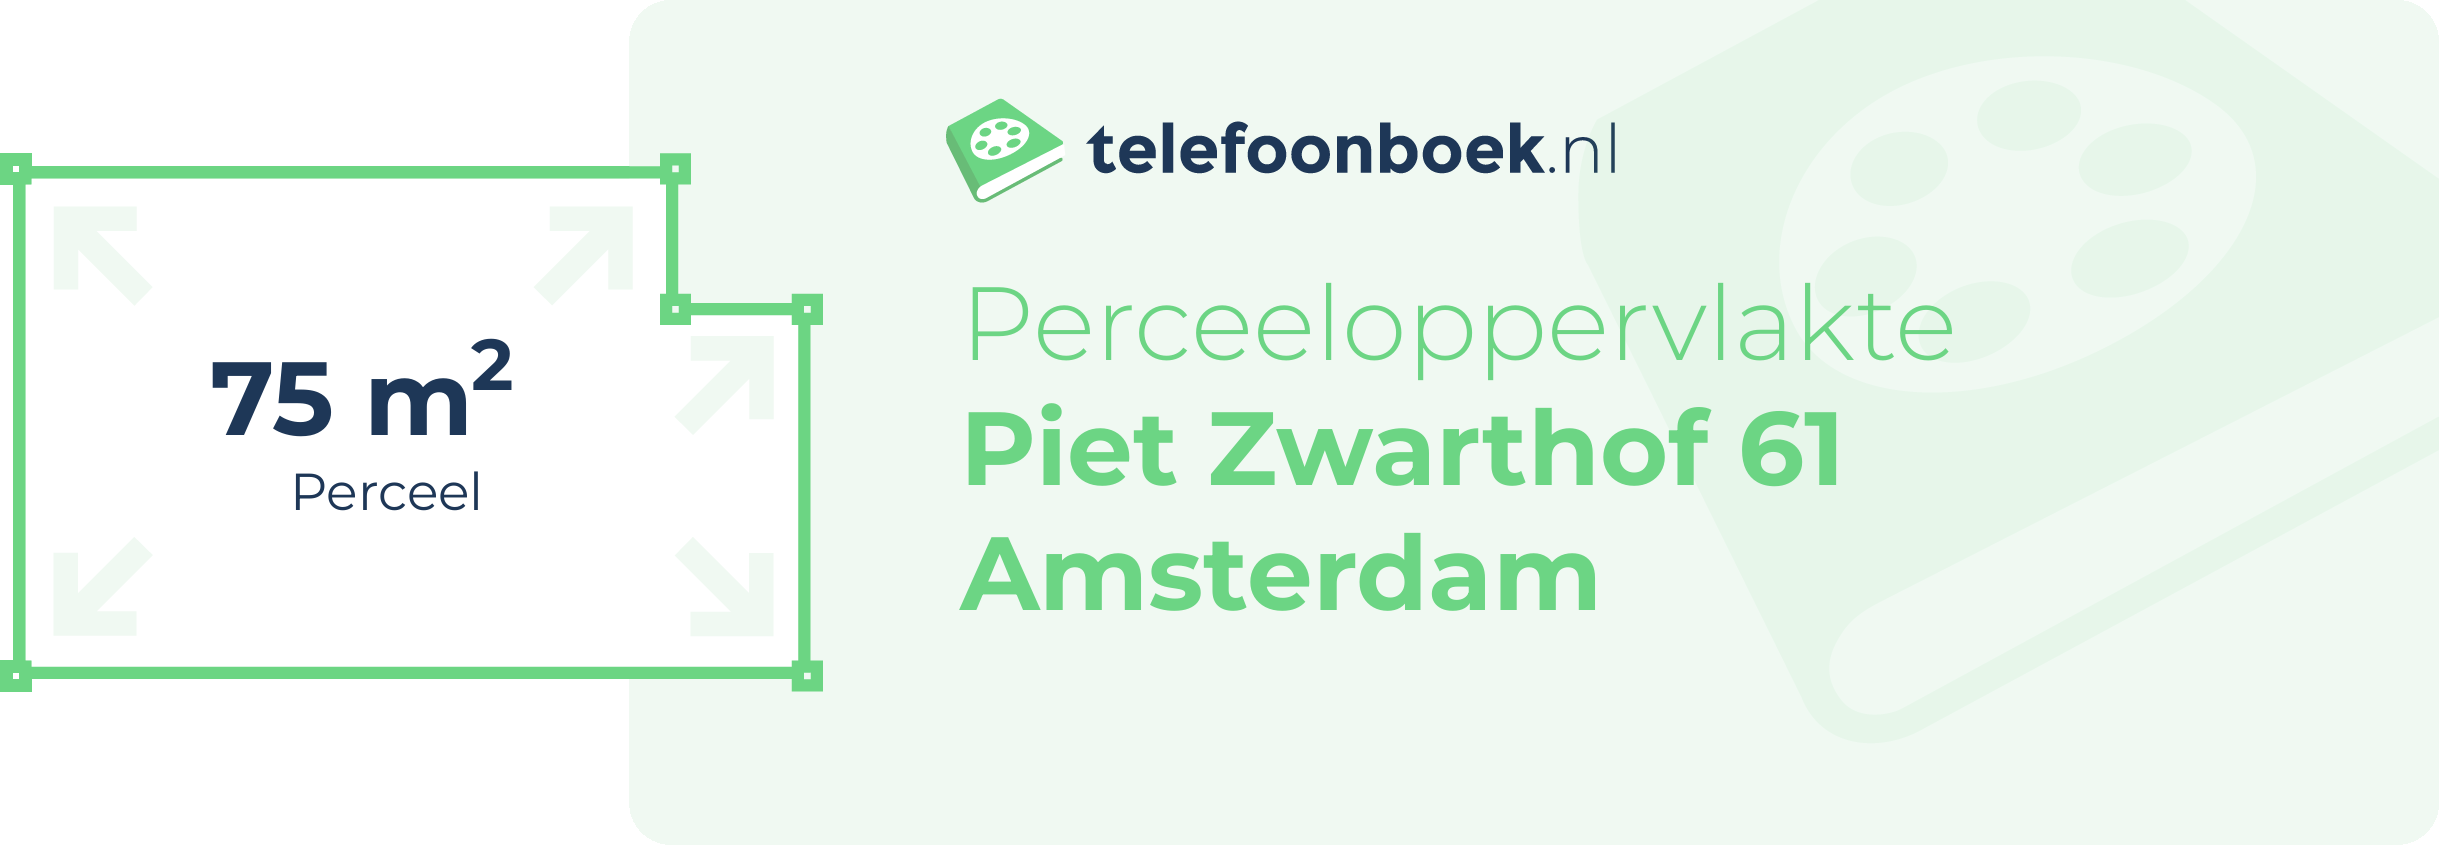 Perceeloppervlakte Piet Zwarthof 61 Amsterdam